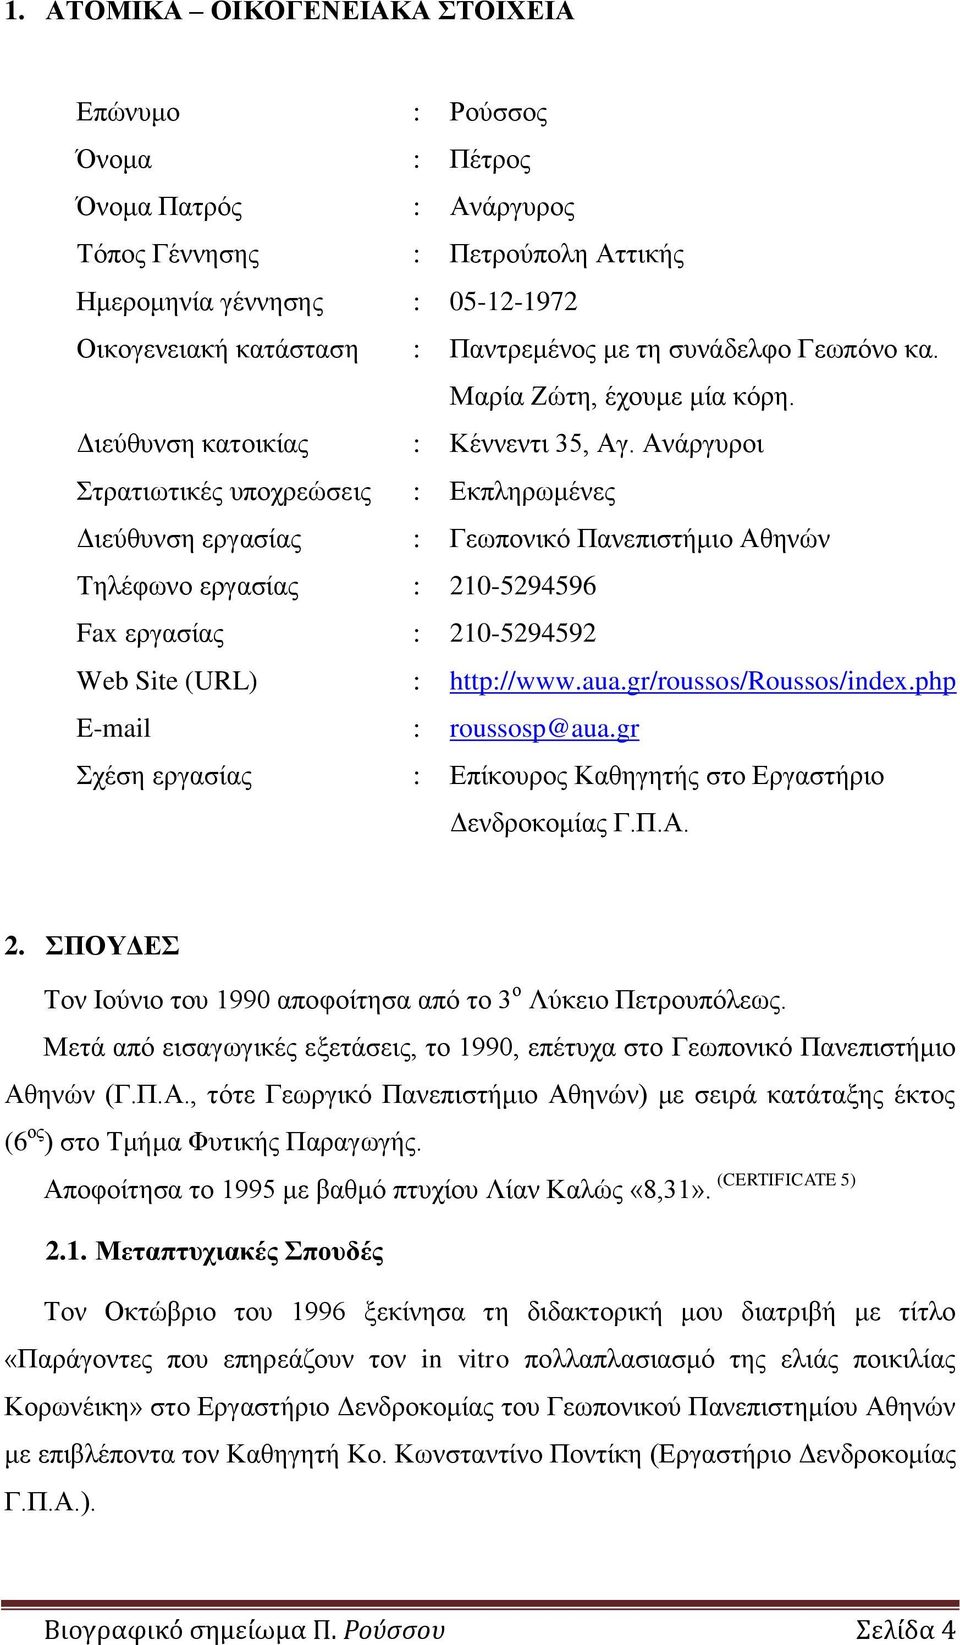 Ανάργυροι Στρατιωτικές υποχρεώσεις : Εκπληρωμένες Διεύθυνση εργασίας : Γεωπονικό Πανεπιστήμιο Αθηνών Τηλέφωνο εργασίας : 210-5294596 Fax εργασίας : 210-5294592 Web Site (URL) : http://www.aua.